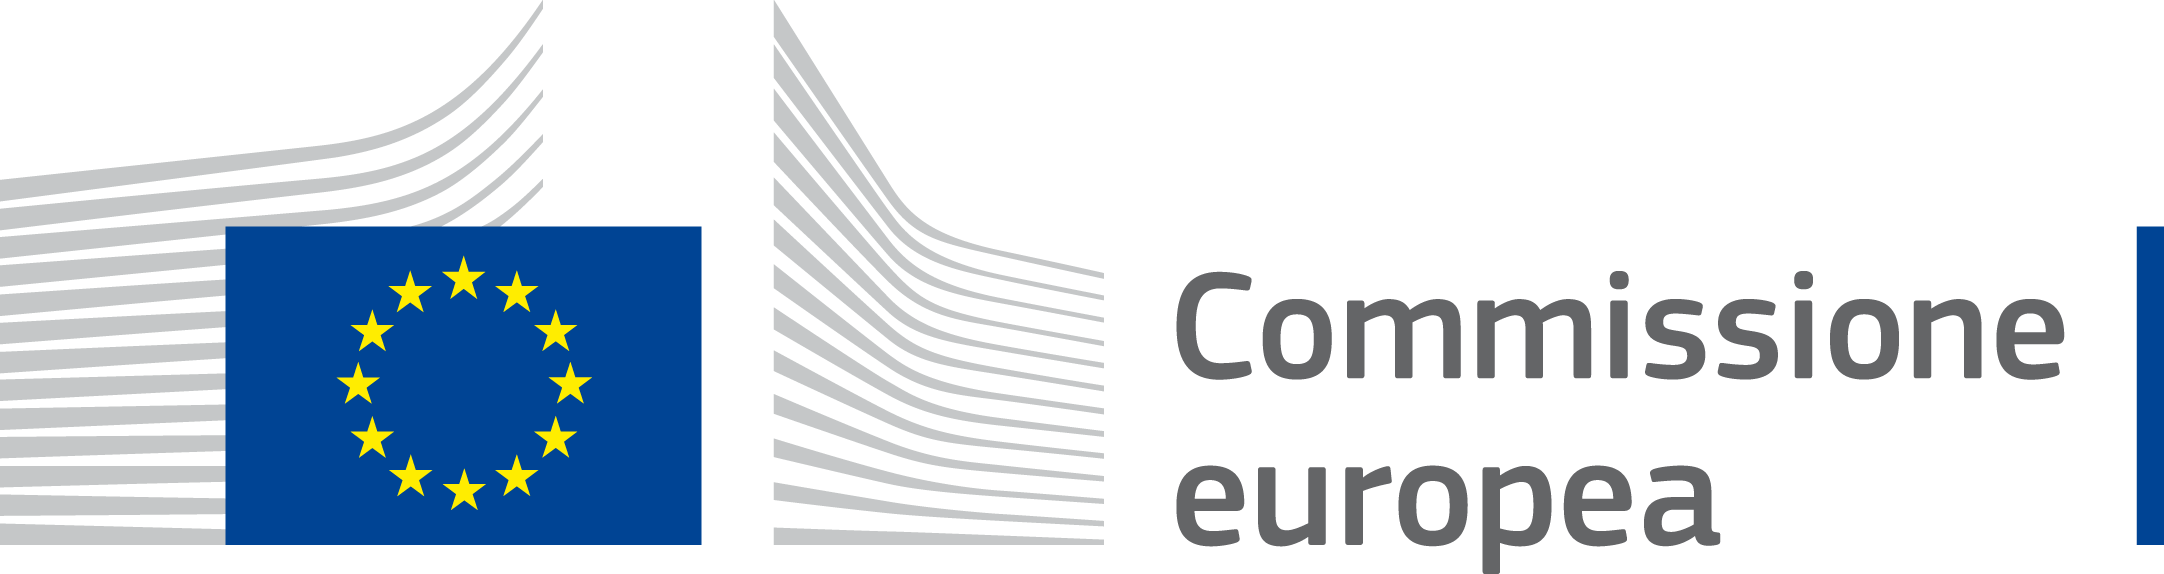 logo commissione europea